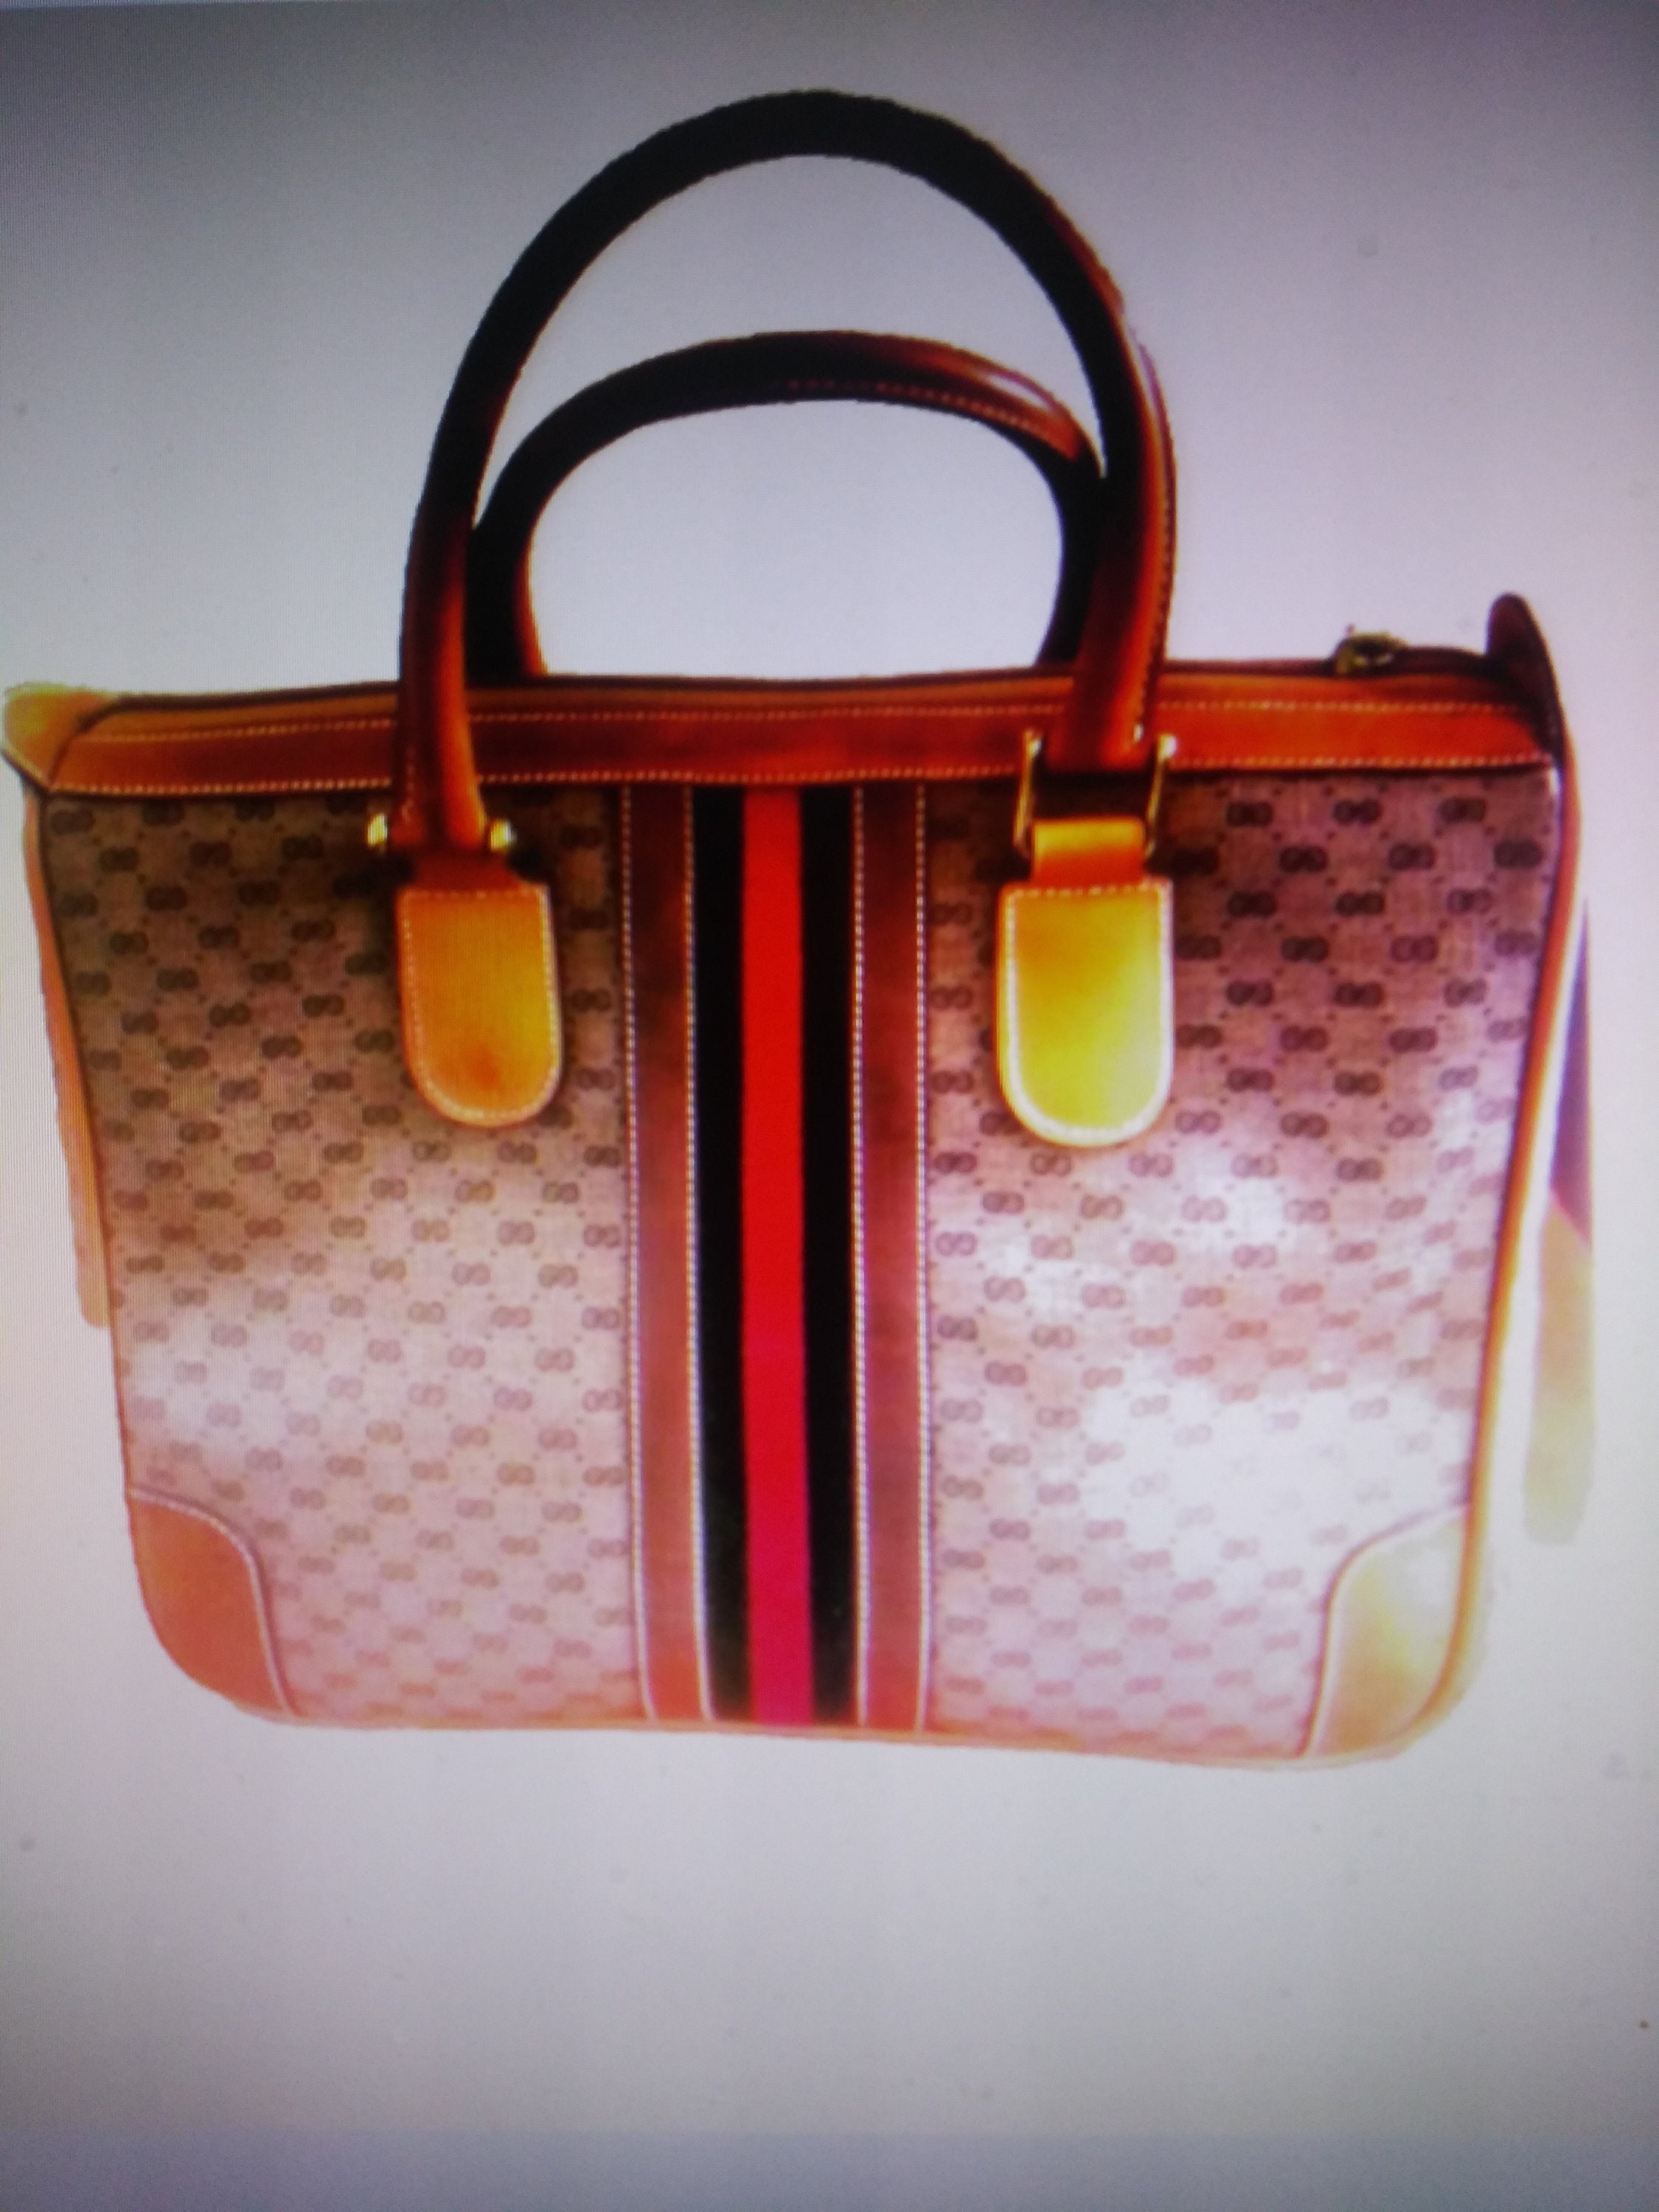 Sold at Auction: Vintage Gucci Purses & Zipper Bag Set (3)